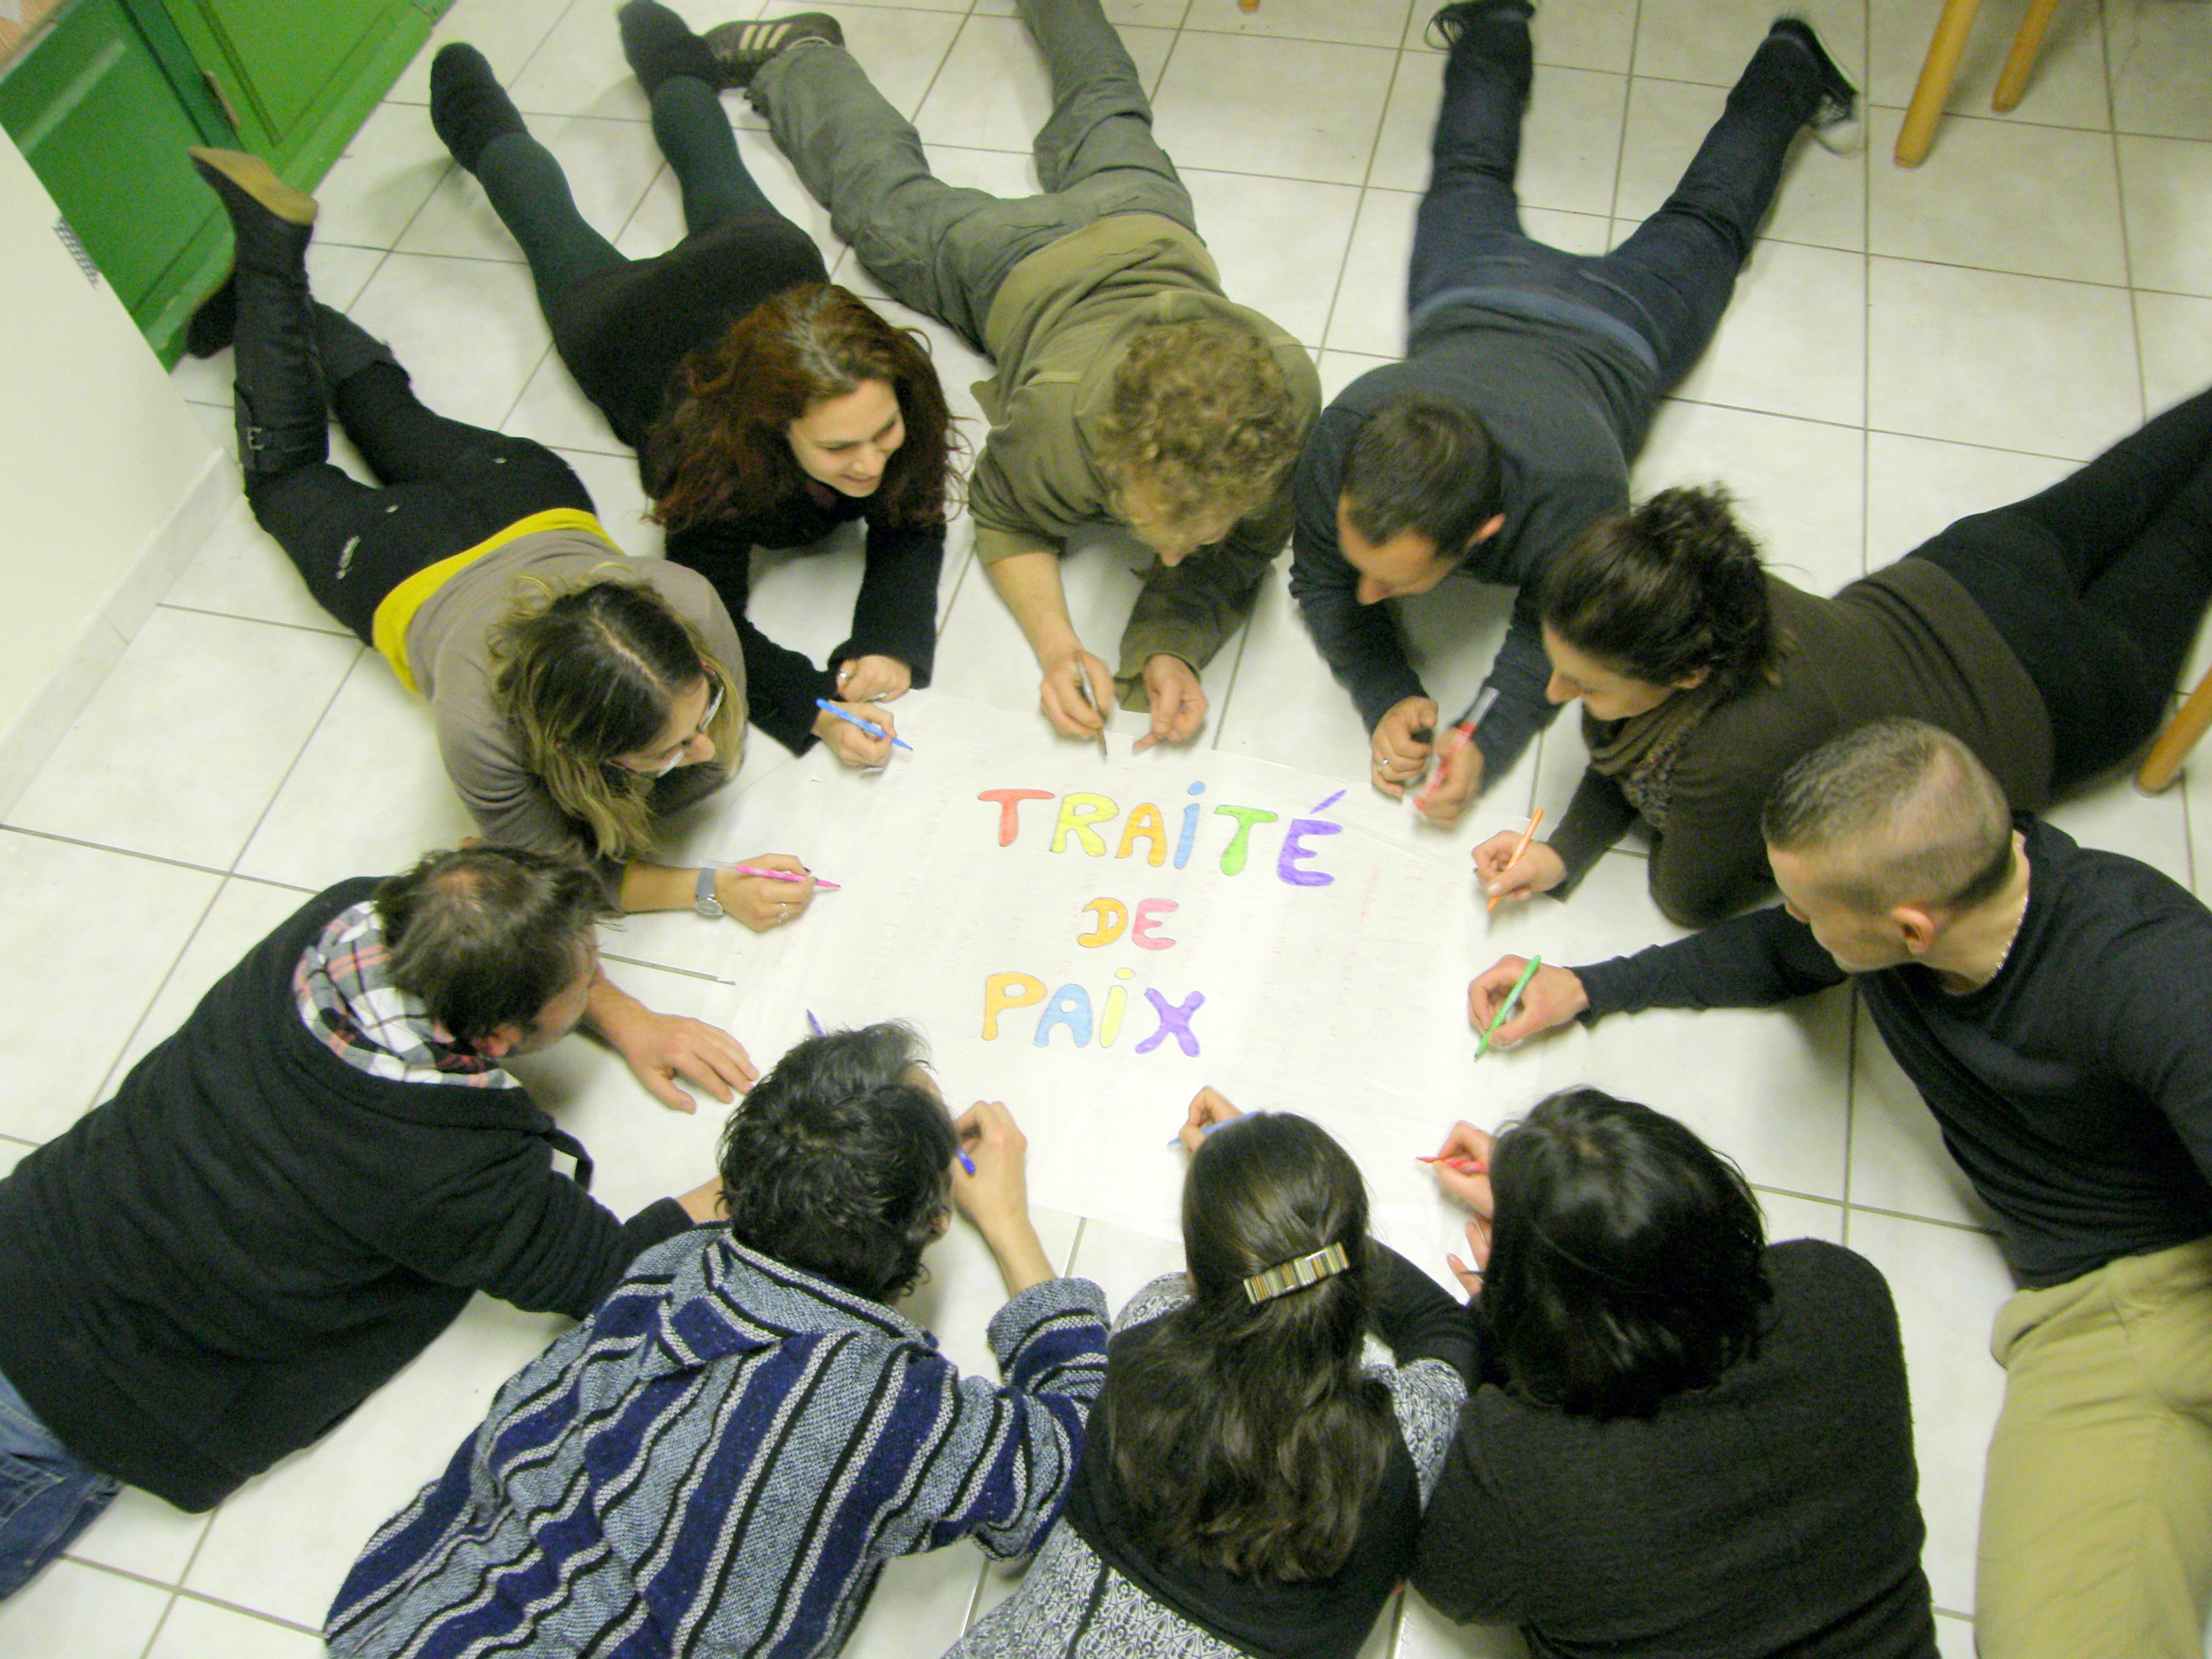 Groupe de stagiaires formant un cercle autour d'une affiche Traité de paix